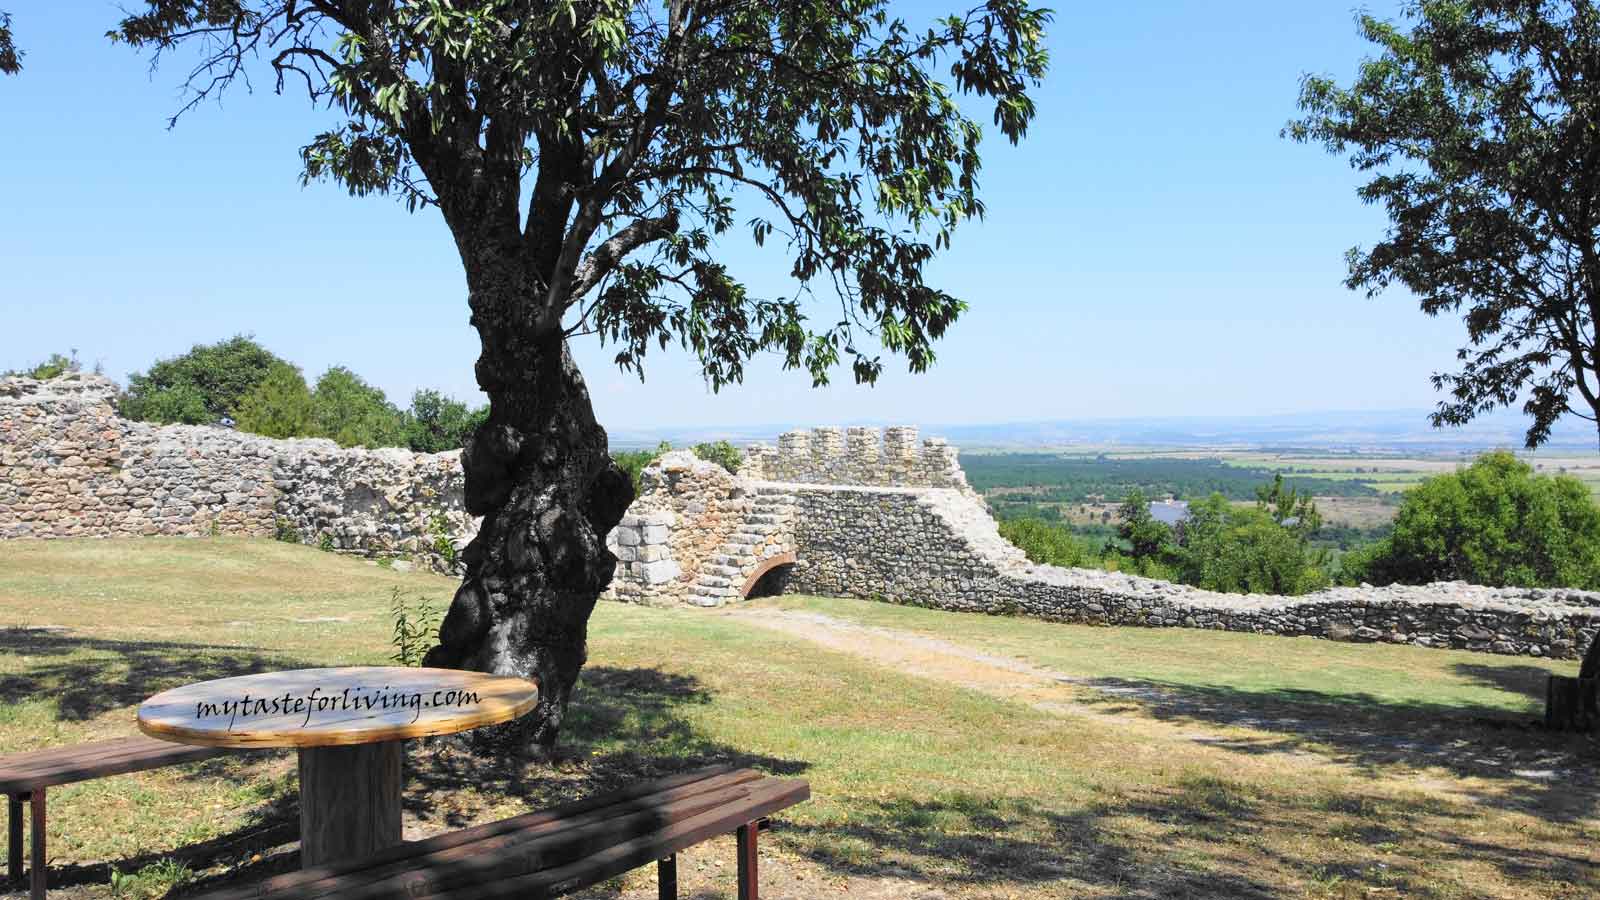 Край село Мезек, община Свиленград, се намира една много добре запазена средновековна византийска крепост, за която обаче се знае твърде малко. Според някои изследователи името й е „Неутзикон“. Руините й имат статут на археологически паметник на културата от национално значение. Мястото е изключително добре поддържано и приятно за посещение. Има пейки под дърветата, където може да се полюбувате на красиви гледки към село Мезек, Горнотракийска низина и Сакар планина.  